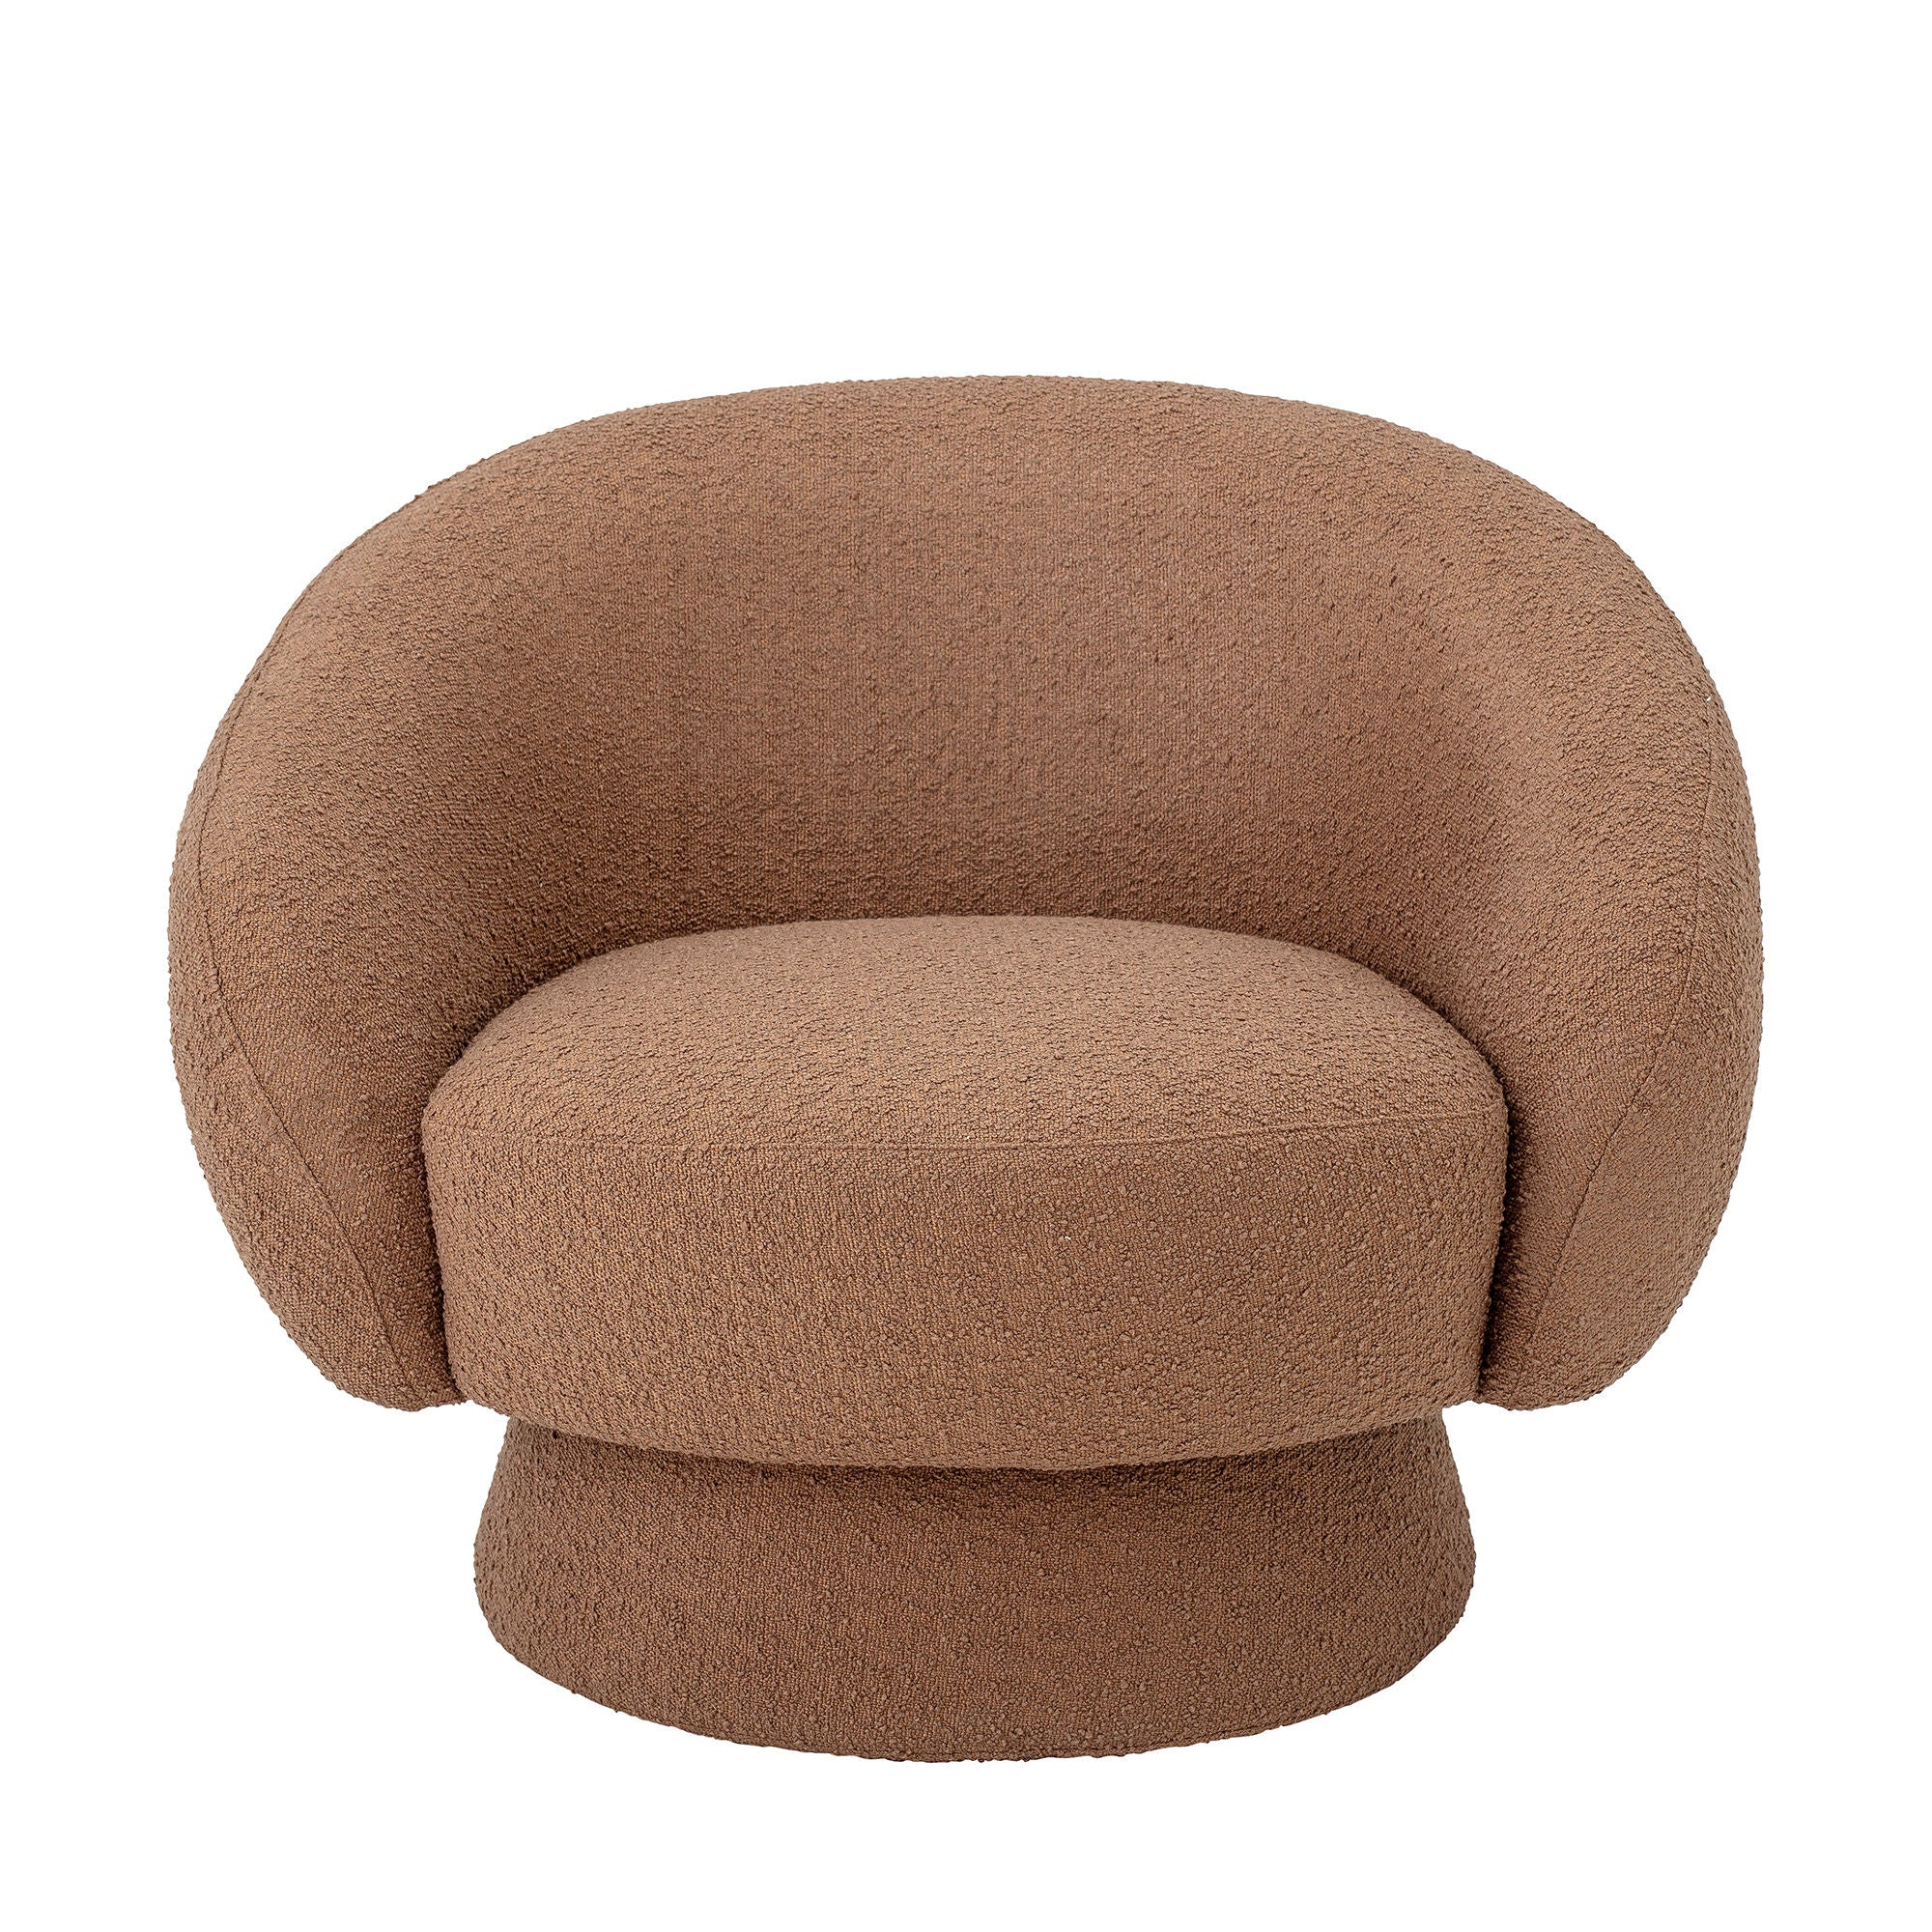 Loungesessel 'Ted' in Braun aus Polyester – Einladender Komfort in warmem Karamellton.